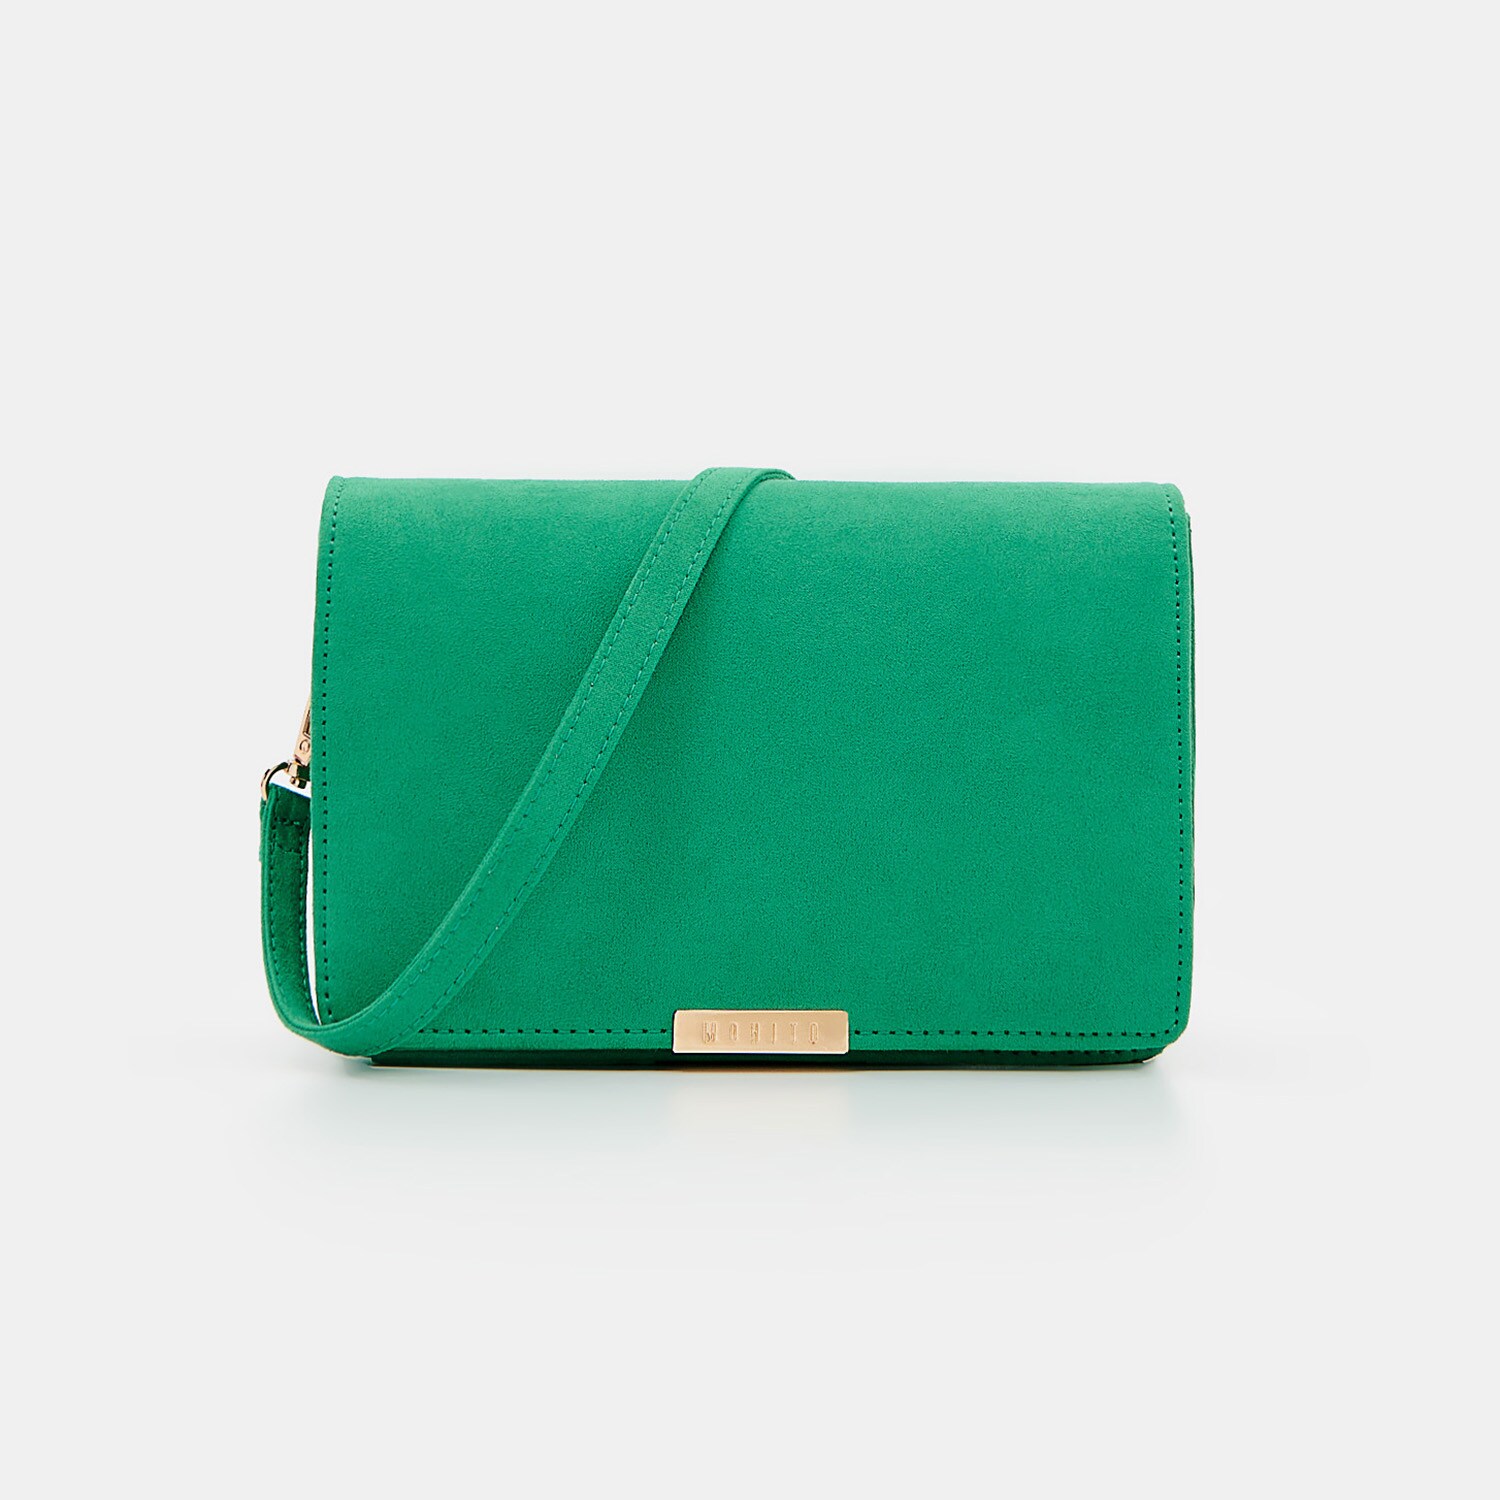 Mohito – Geantă verde cu curea lungă – Verde Accessories > bags 2023-09-24